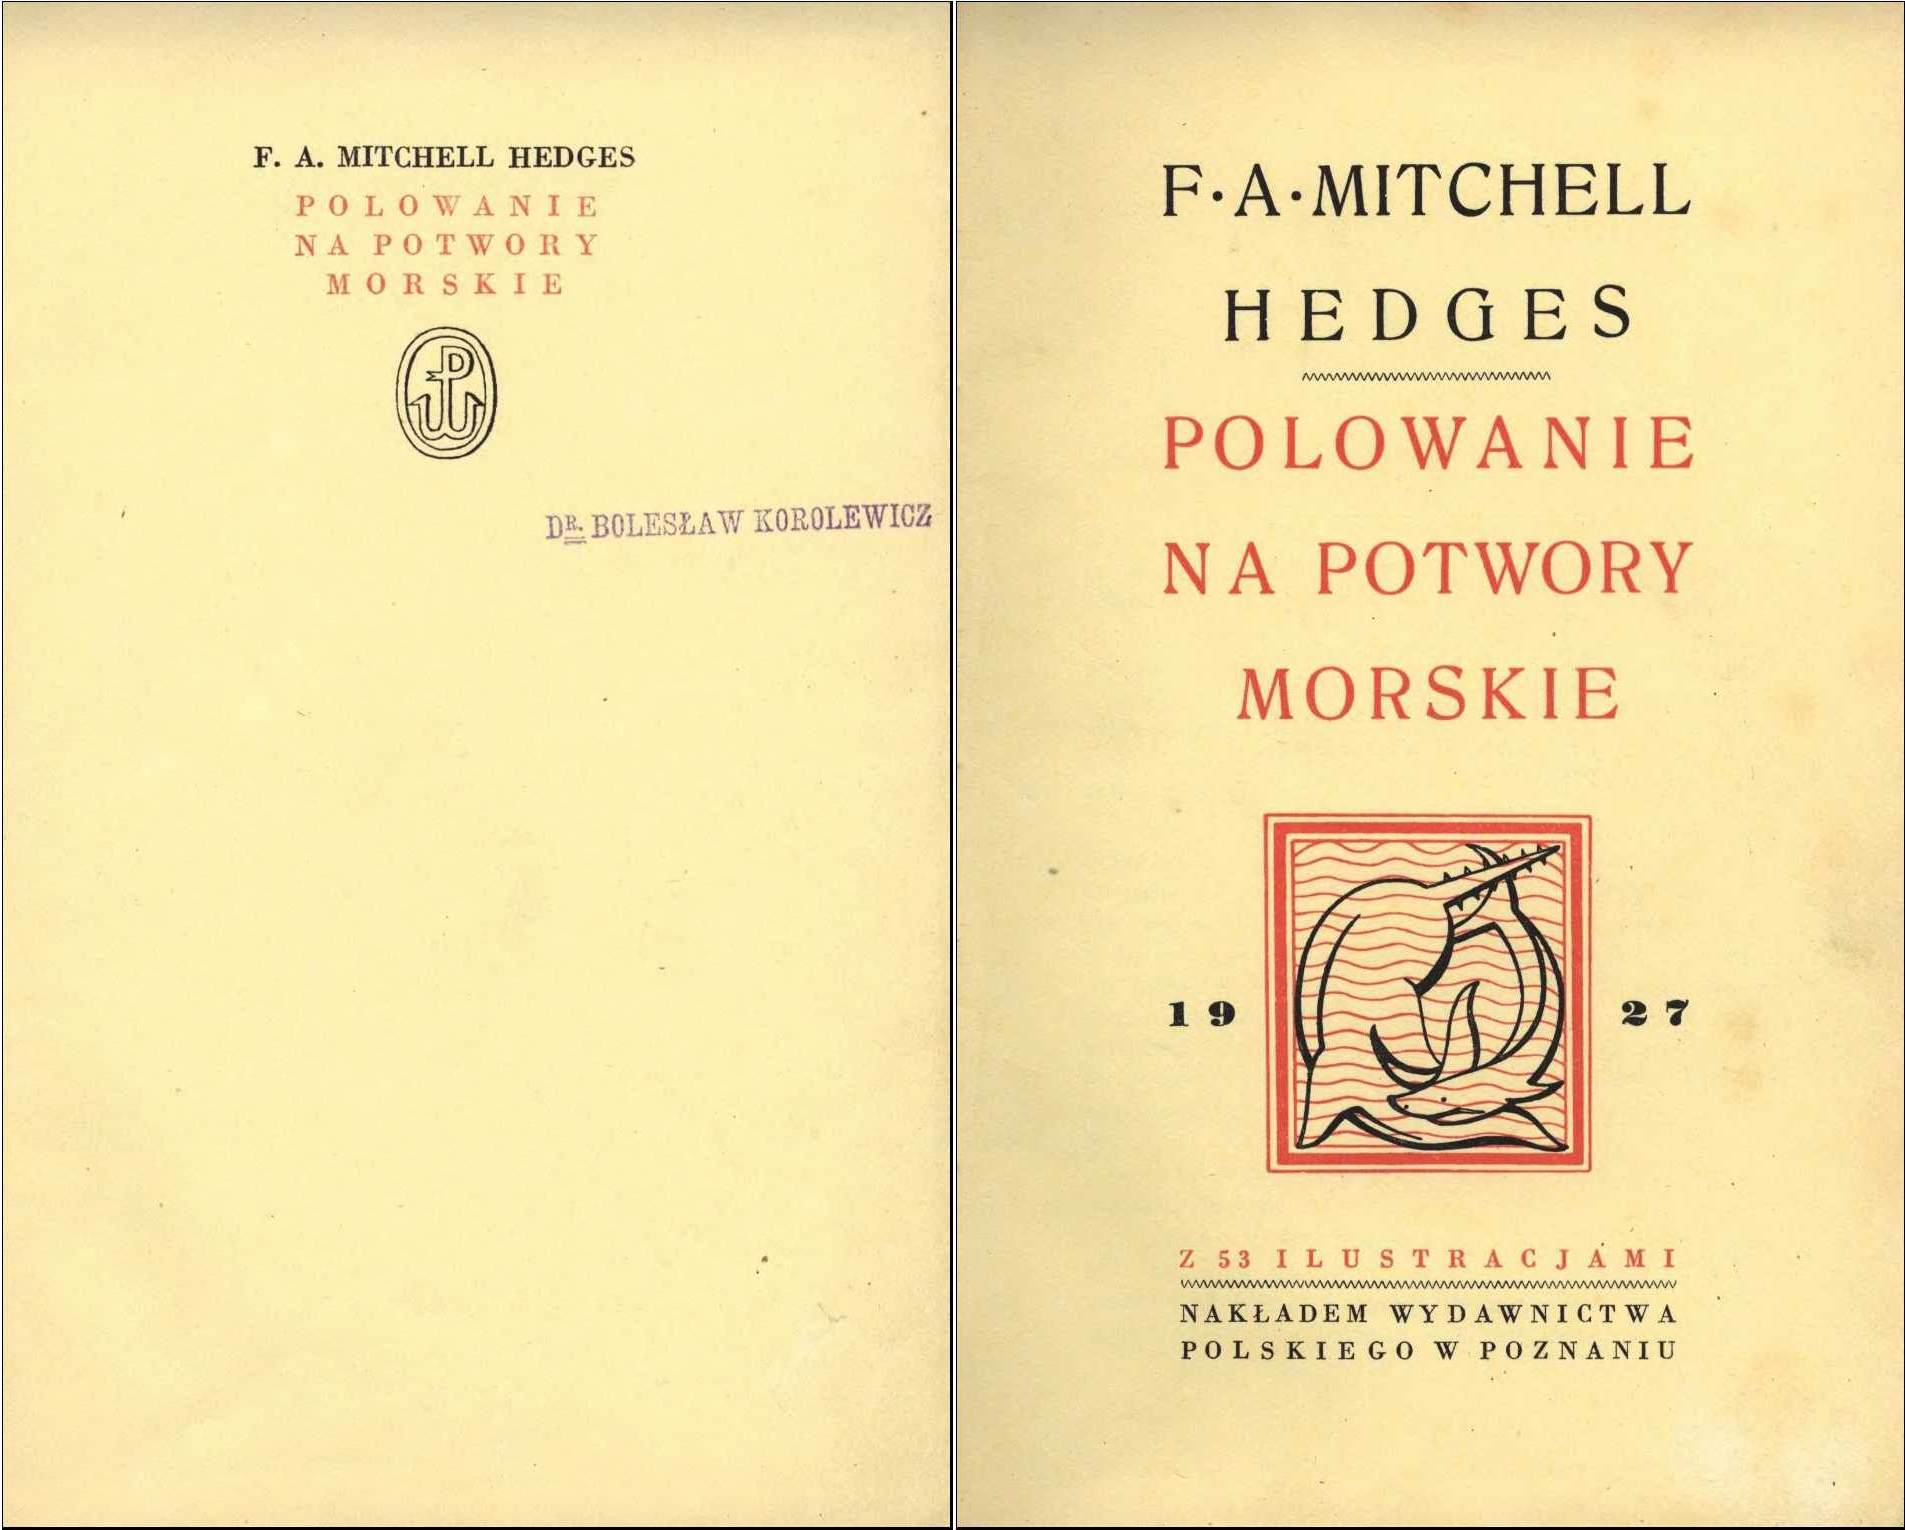 Wewn�trzna ok�adka ksi�ki F.A. Mitchella Hedgesa "Polowanie na potwory morskie". Wydawnictwo Polskie, Pozna� 1927.